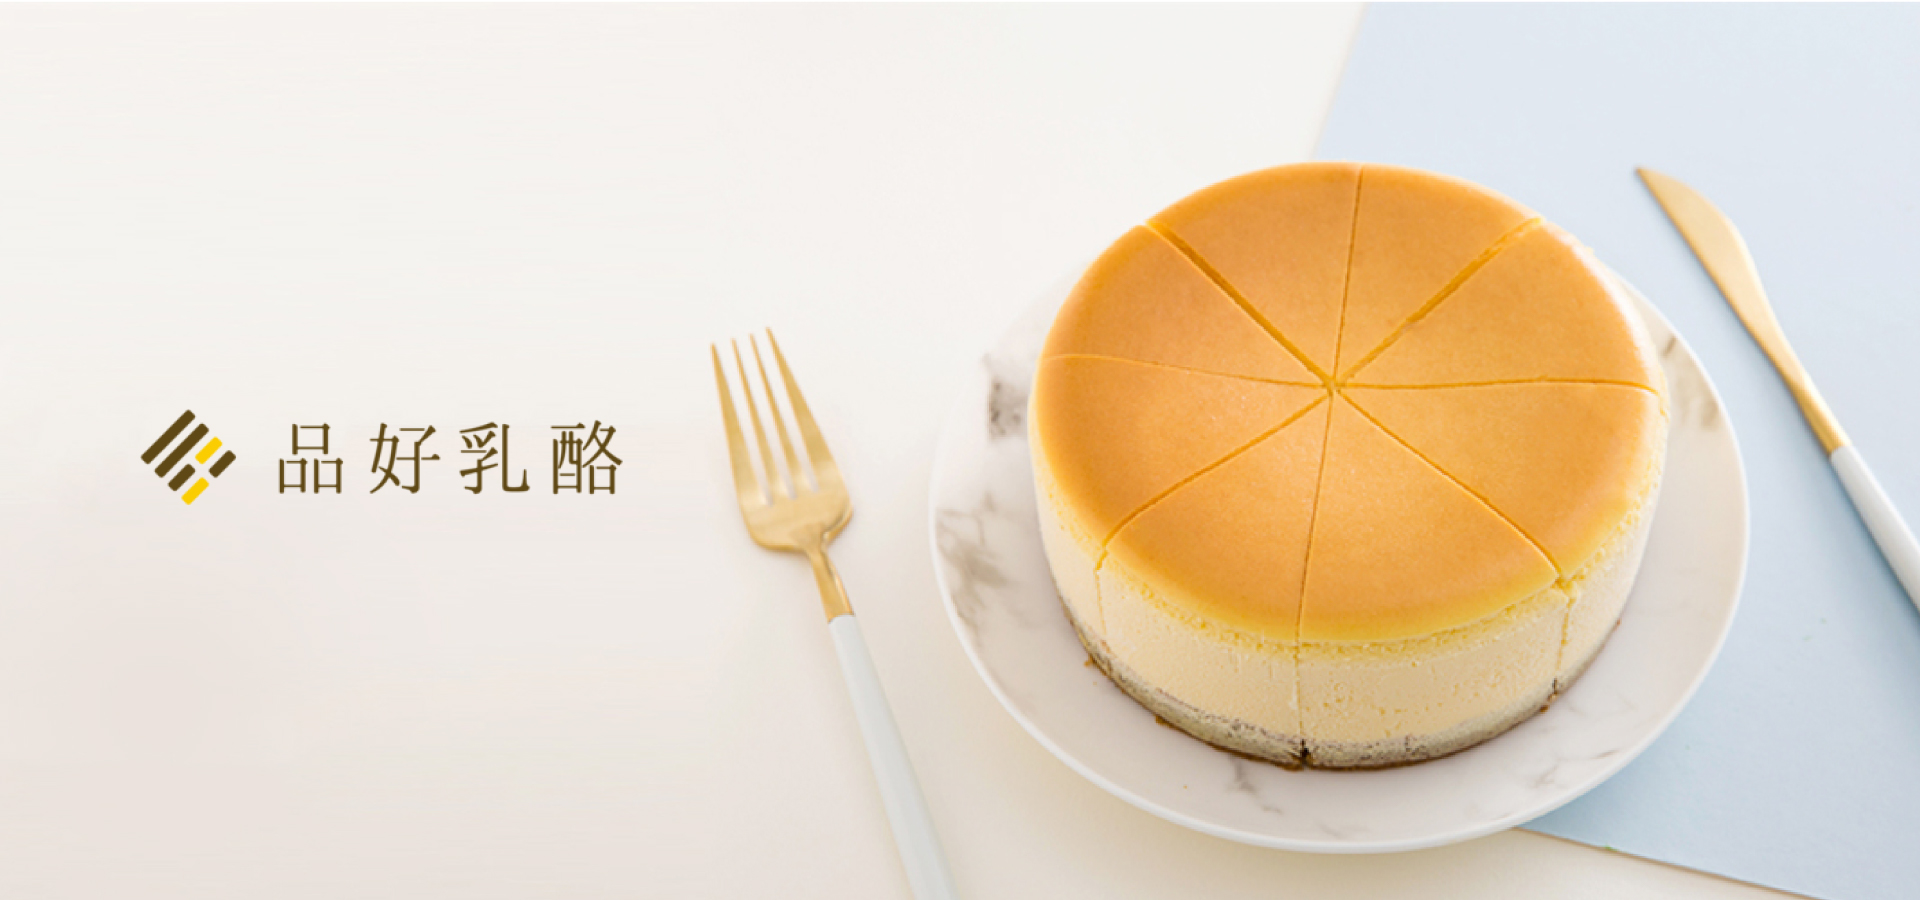 pincheesecake feature image 1 | 品好乳酪品牌重整專案